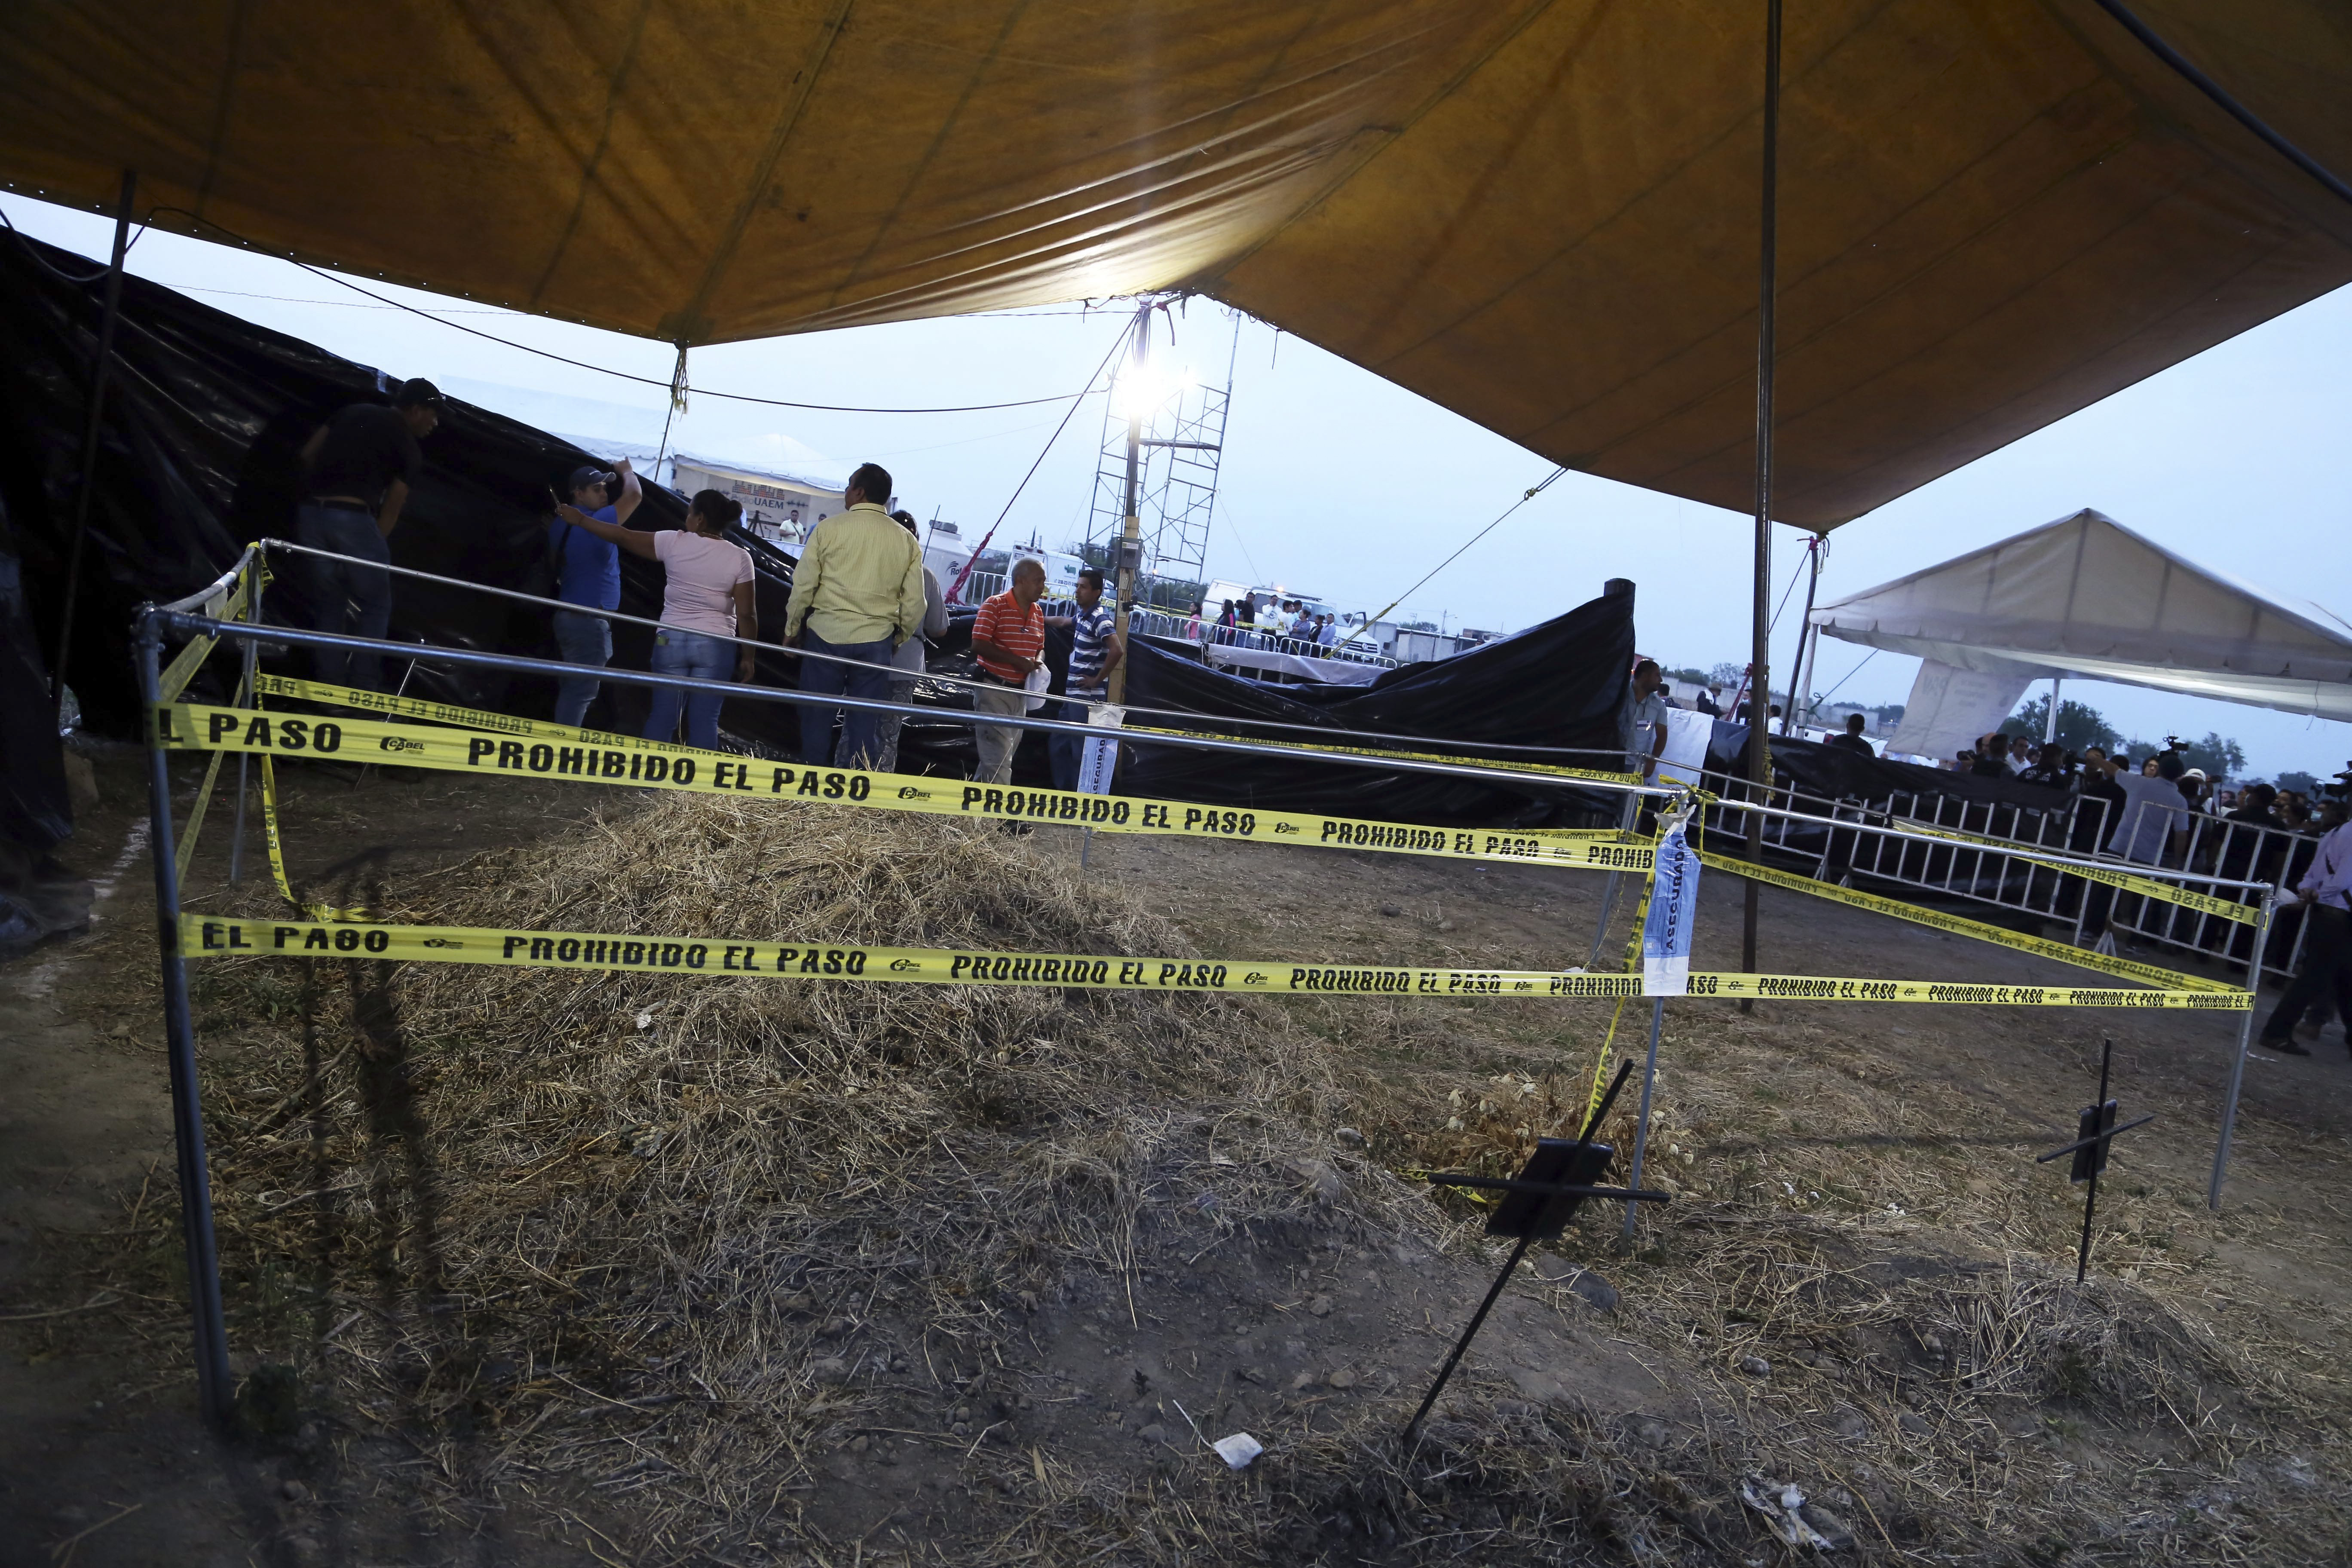  Organizaciones denuncian irregularidades en Tetelcingo; suman 84 cuerpos exhumados